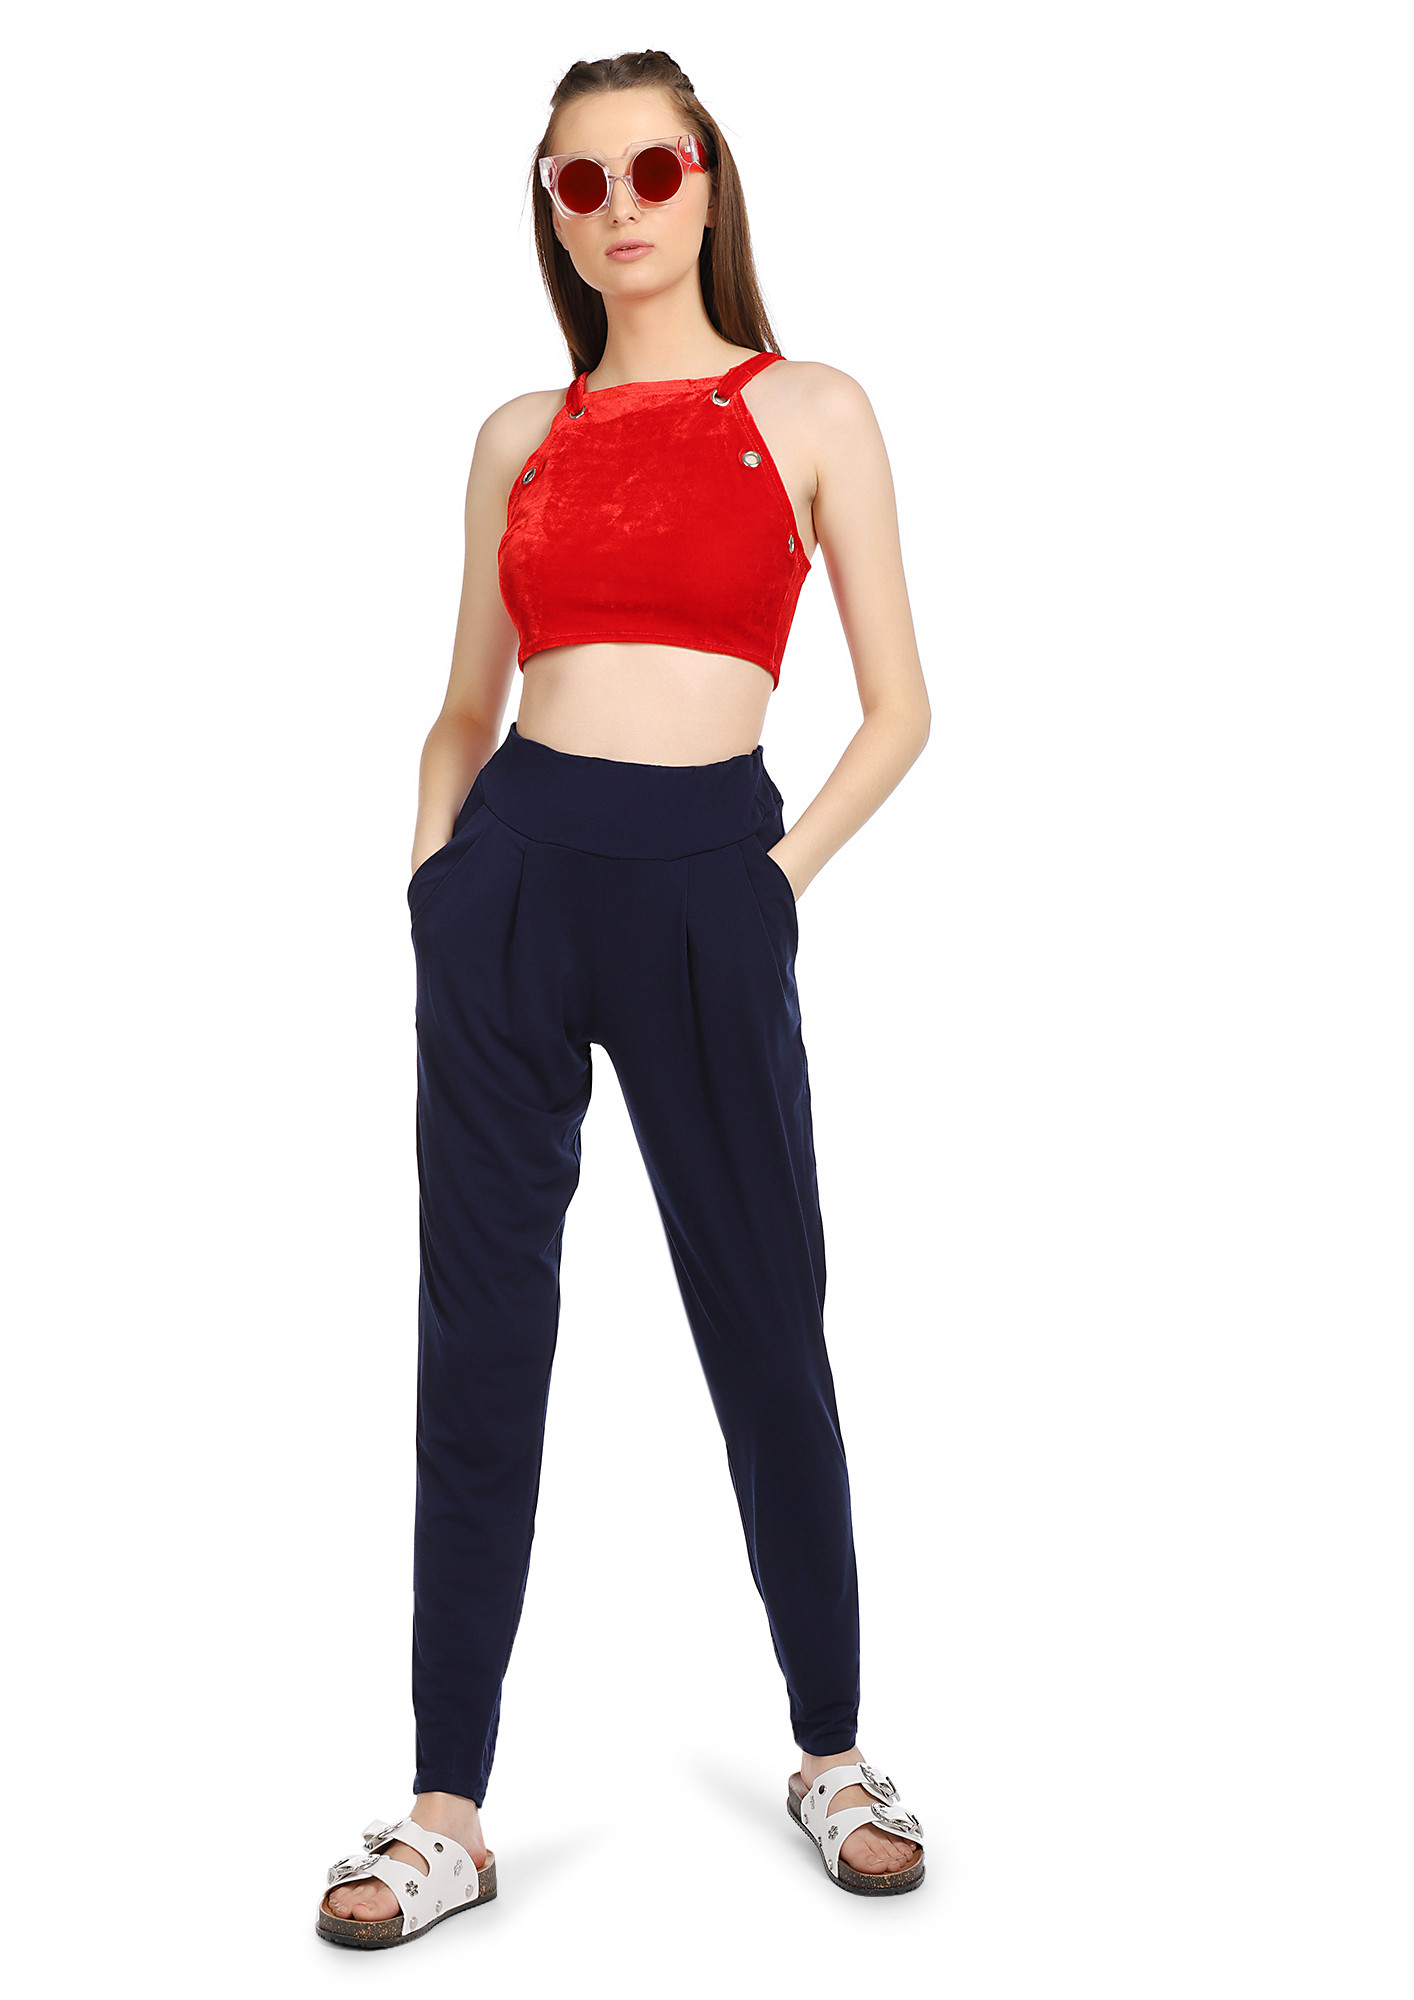 iEFiEL Womens Metallic Activewear Crop Top with Shorts Hot Pants Dance  Costume - Walmart.com